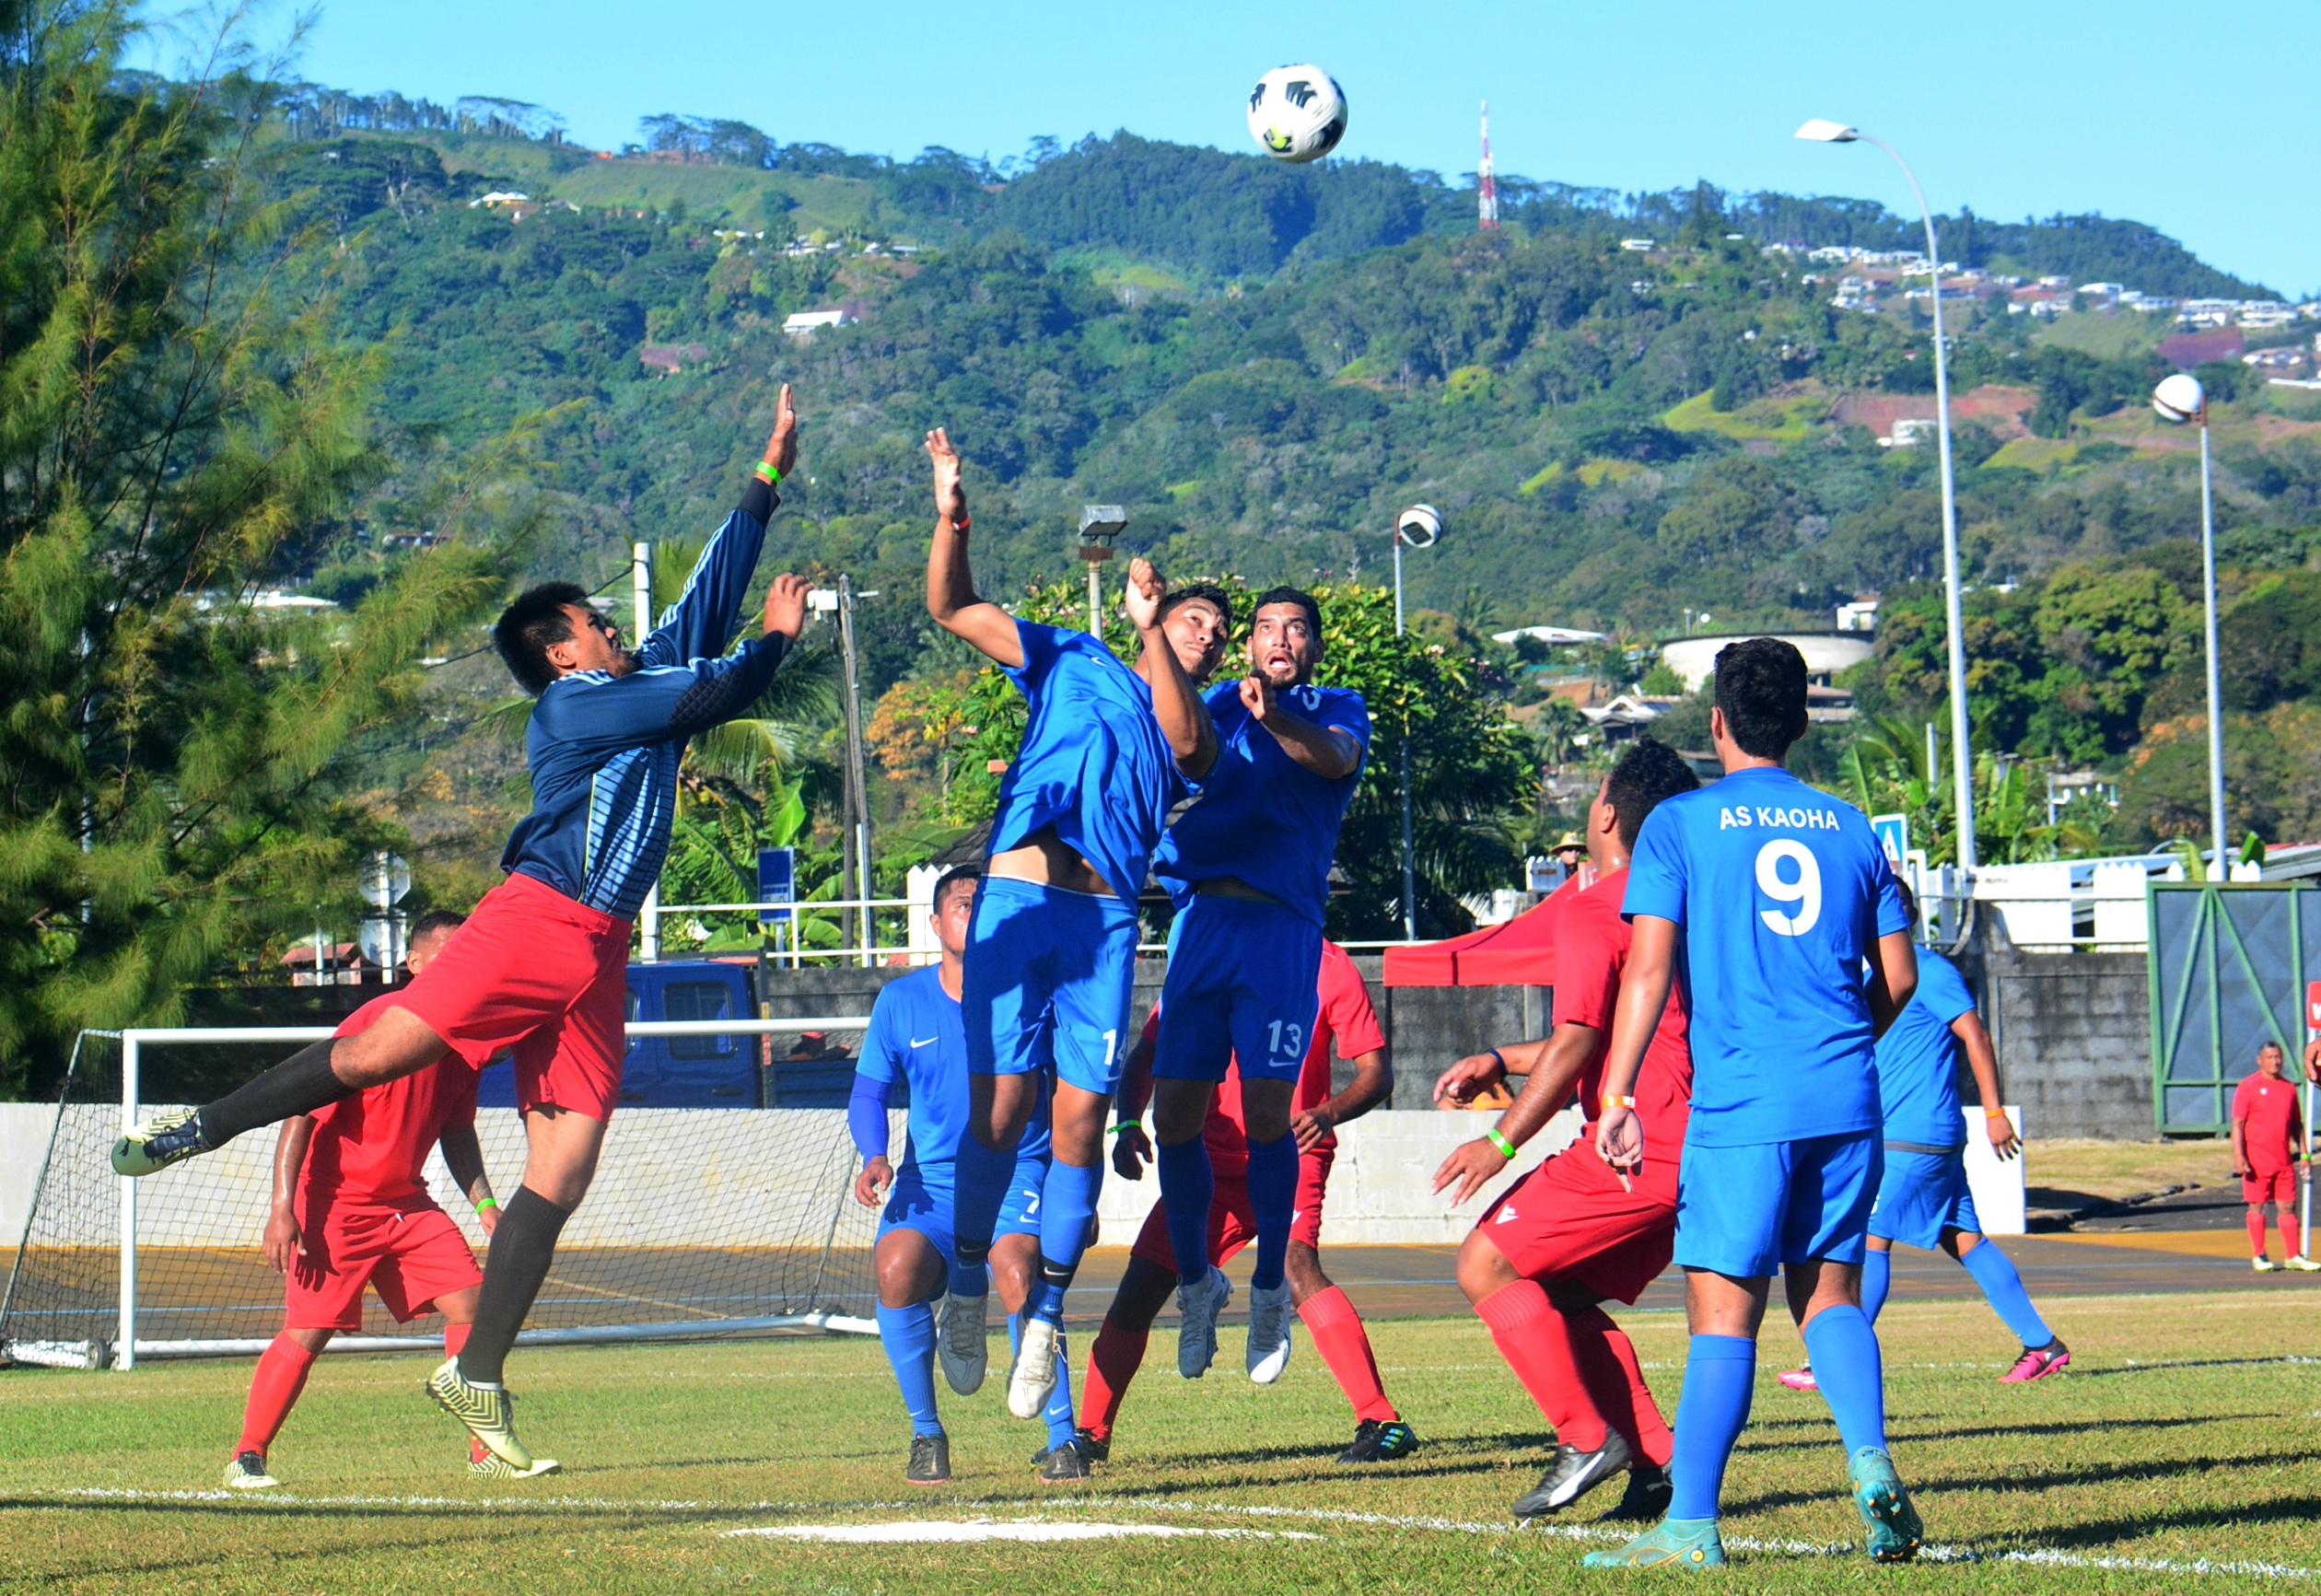 L'AS Kaoha Club, de Hiva Oa, a lancé son tournoi en dominant l'AS Fauna Nui, de Huahine, sur le score de 7-0.